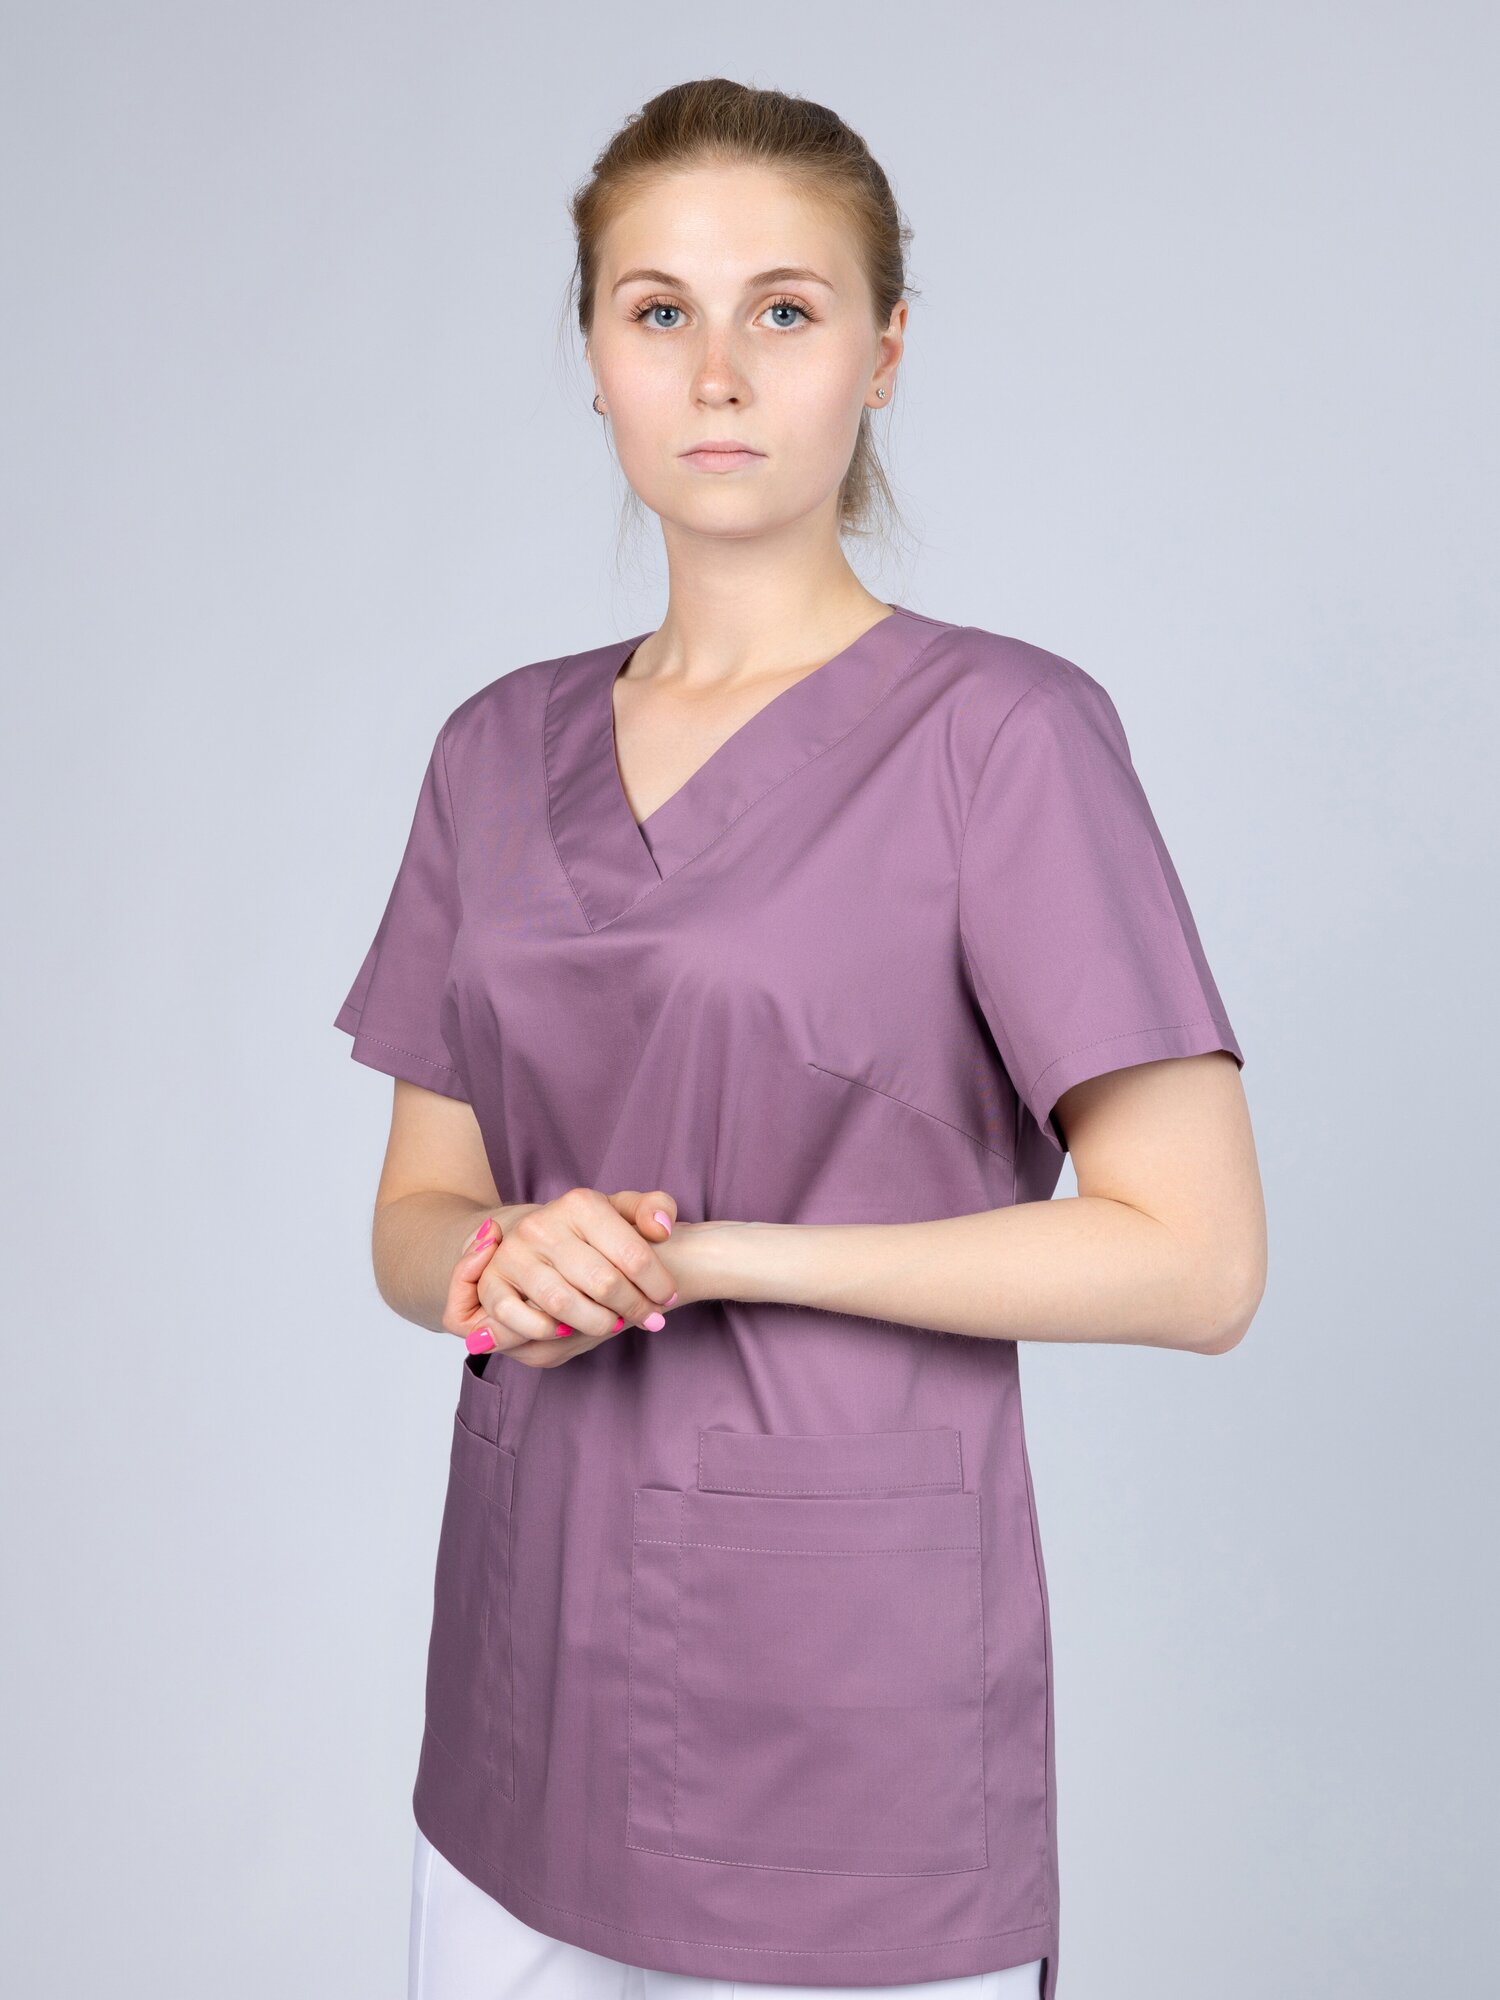 Премиальная медицинская одежда/Медицинский топ с карманами сиреневый 48 размера